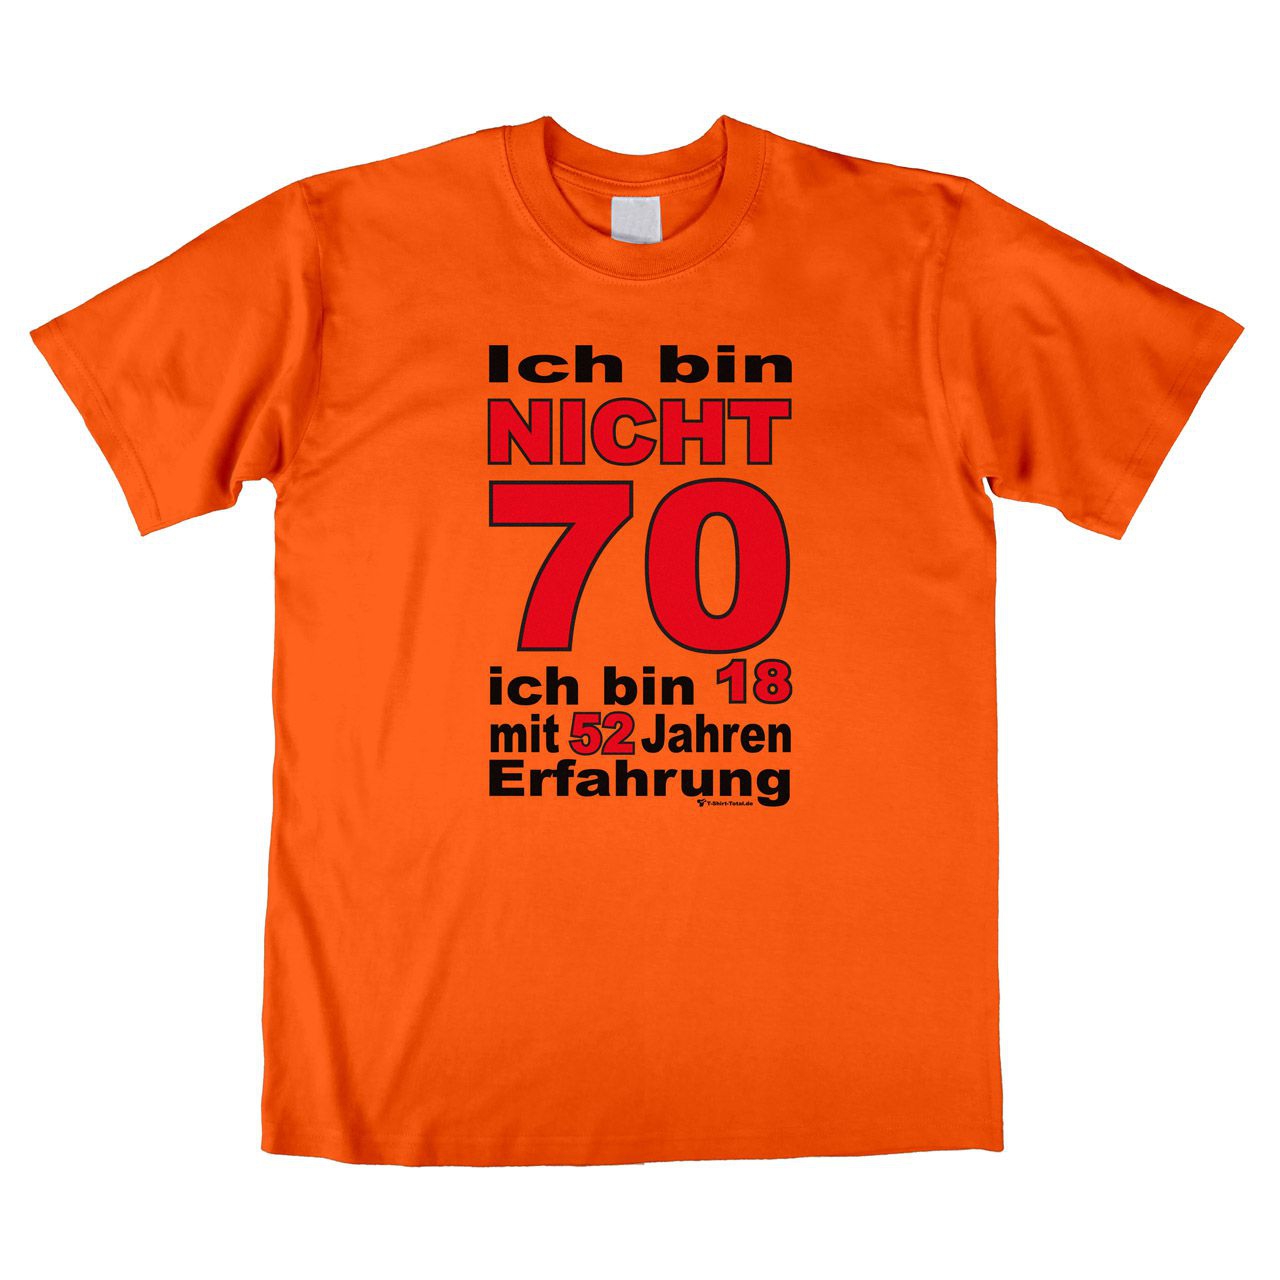 Bin nicht 70 Unisex T-Shirt orange Large